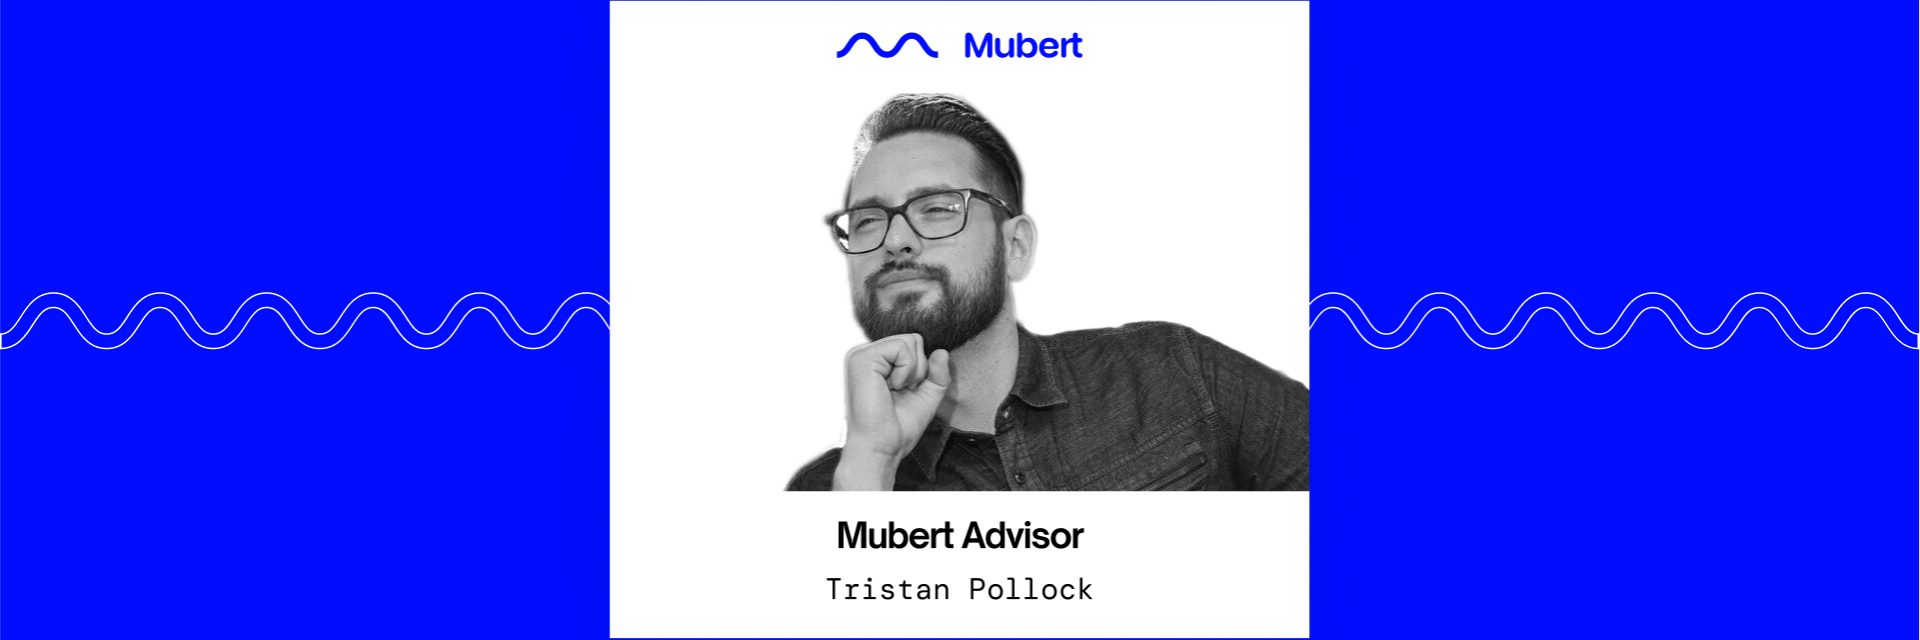 Mubert Advisers: Tristan Pollock â€” Mubert Blog